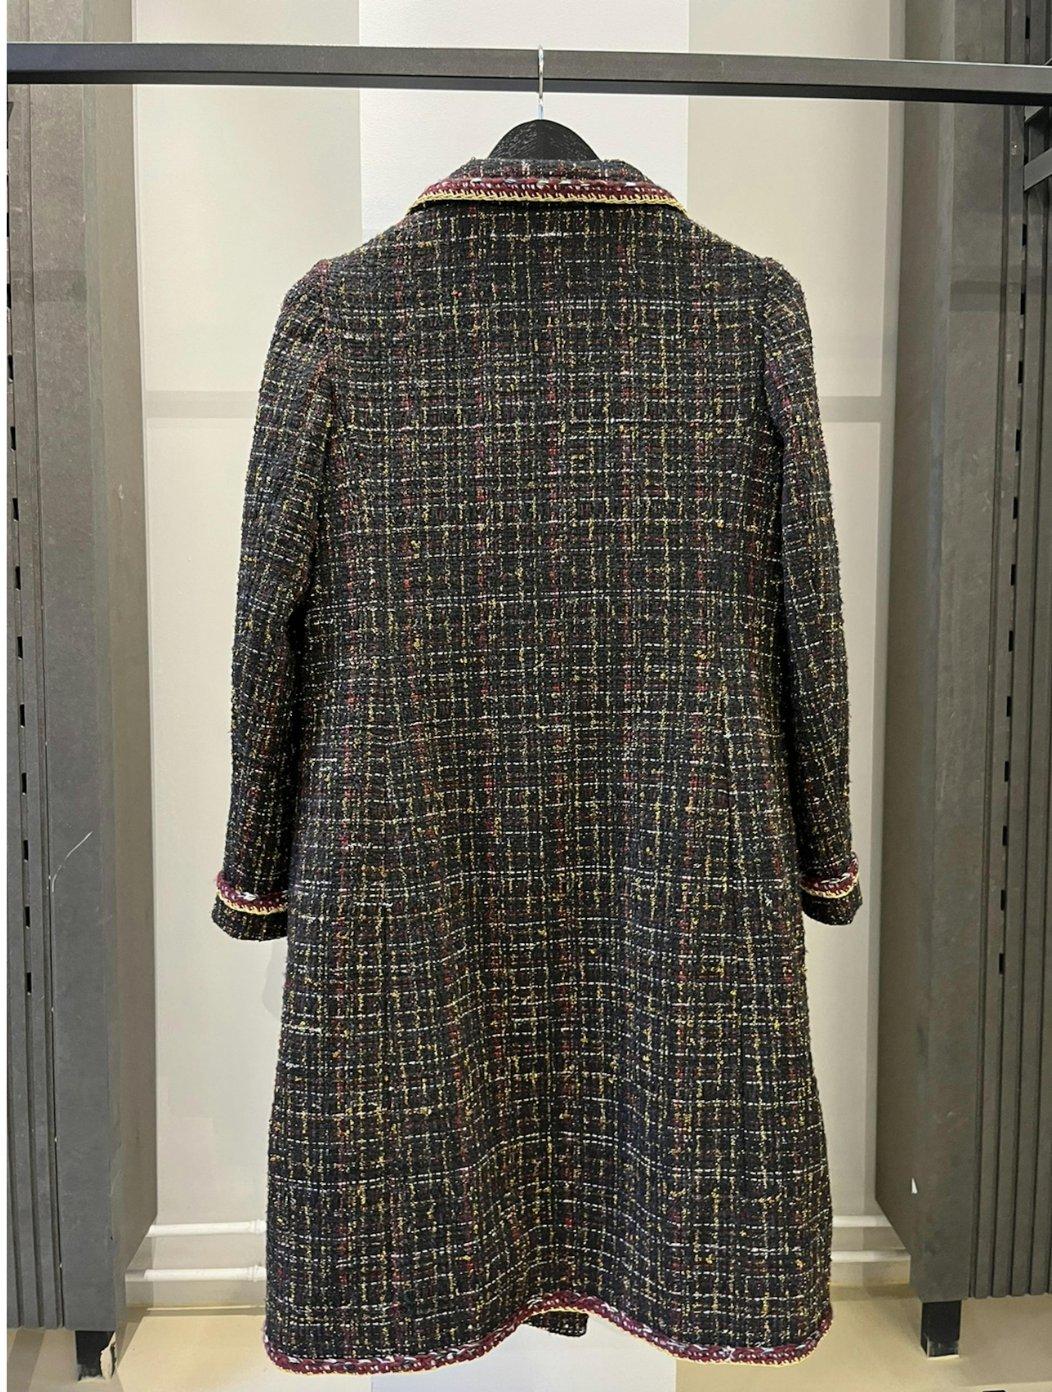 Chanel
Coates en tweed
Taille IT 42

Magnifique manteau en tweed de Chanel en taille IT42. En très bon état, fabriqué en France. Fabriqué à partir de matériaux superbes, manteau lourd. Fabriqué en France.